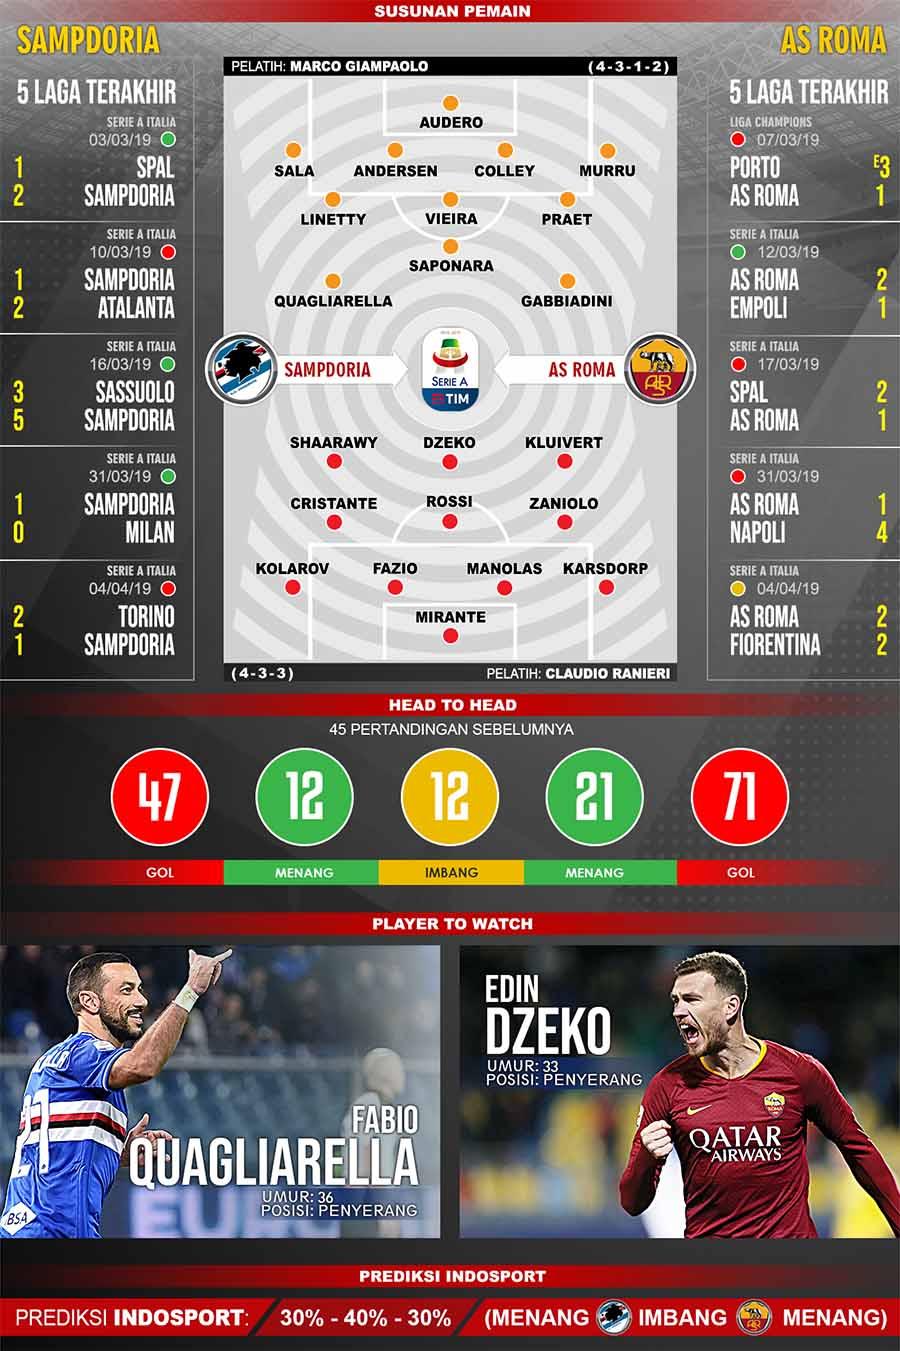 Pertandingan Sampdoria vs AS Roma./Indosport.com Copyright: Indosport.com